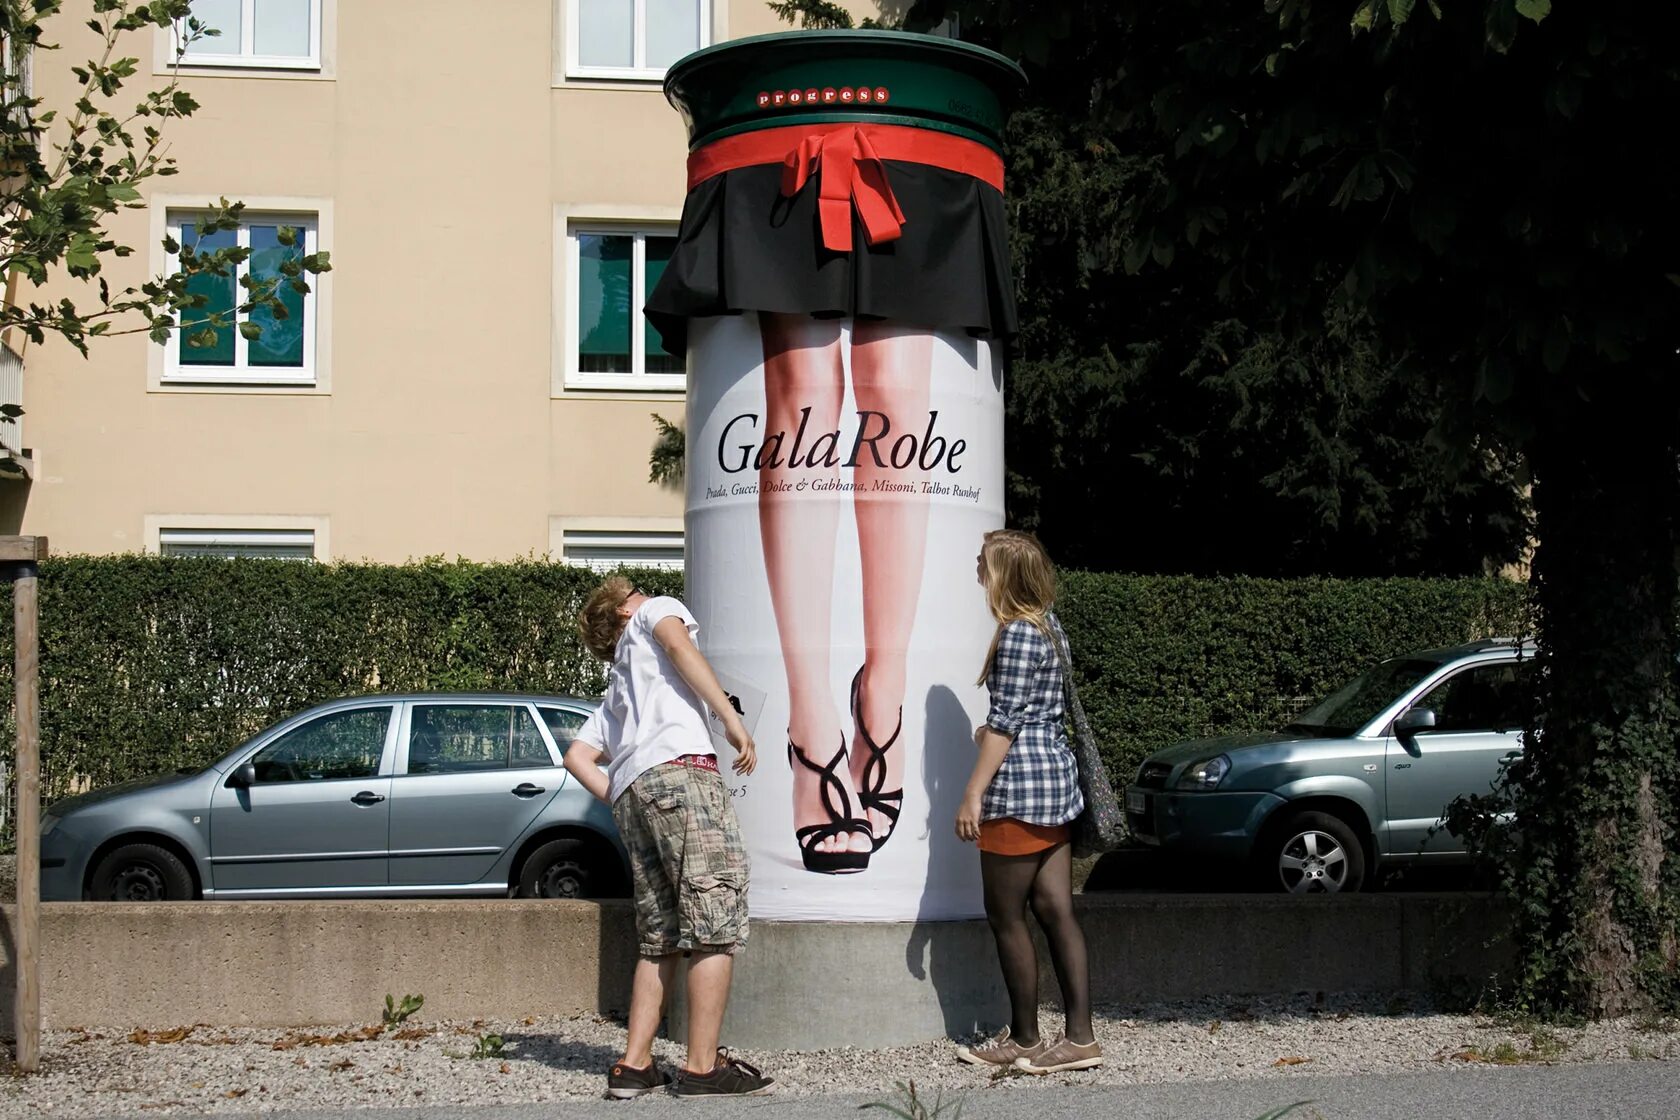 Не стандартно или нестандартно. Австрийская реклама. Нестандартные рекламные решения. Необычная реклама леггинсов. Нестандартная рекламная установка.